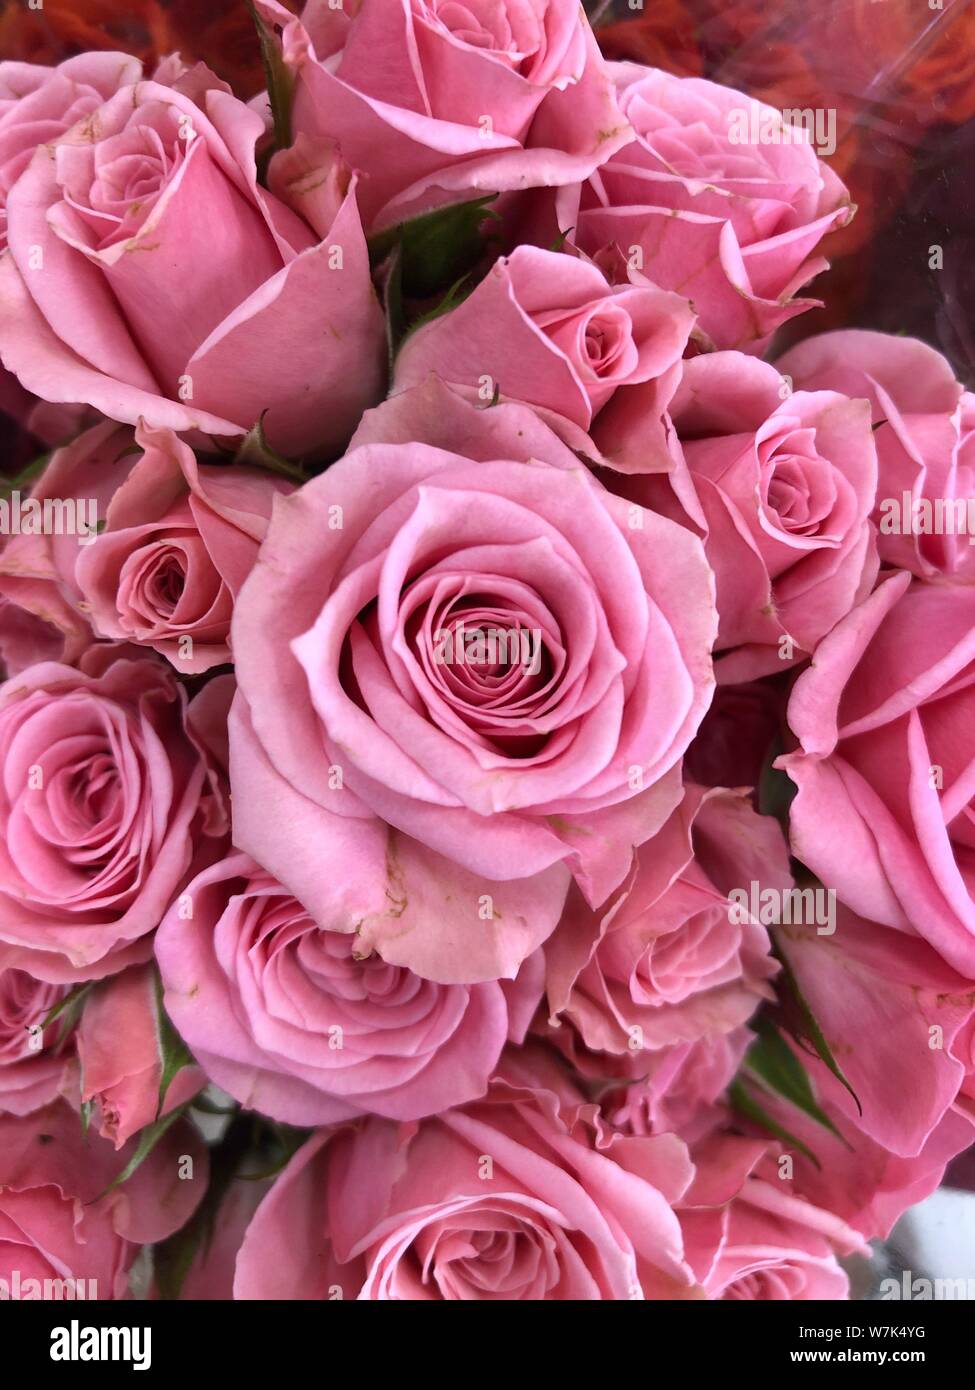 Rosa Rosen Hintergrund schön Blumen wallpaper Bild beschneiden für Design  Stockfotografie - Alamy